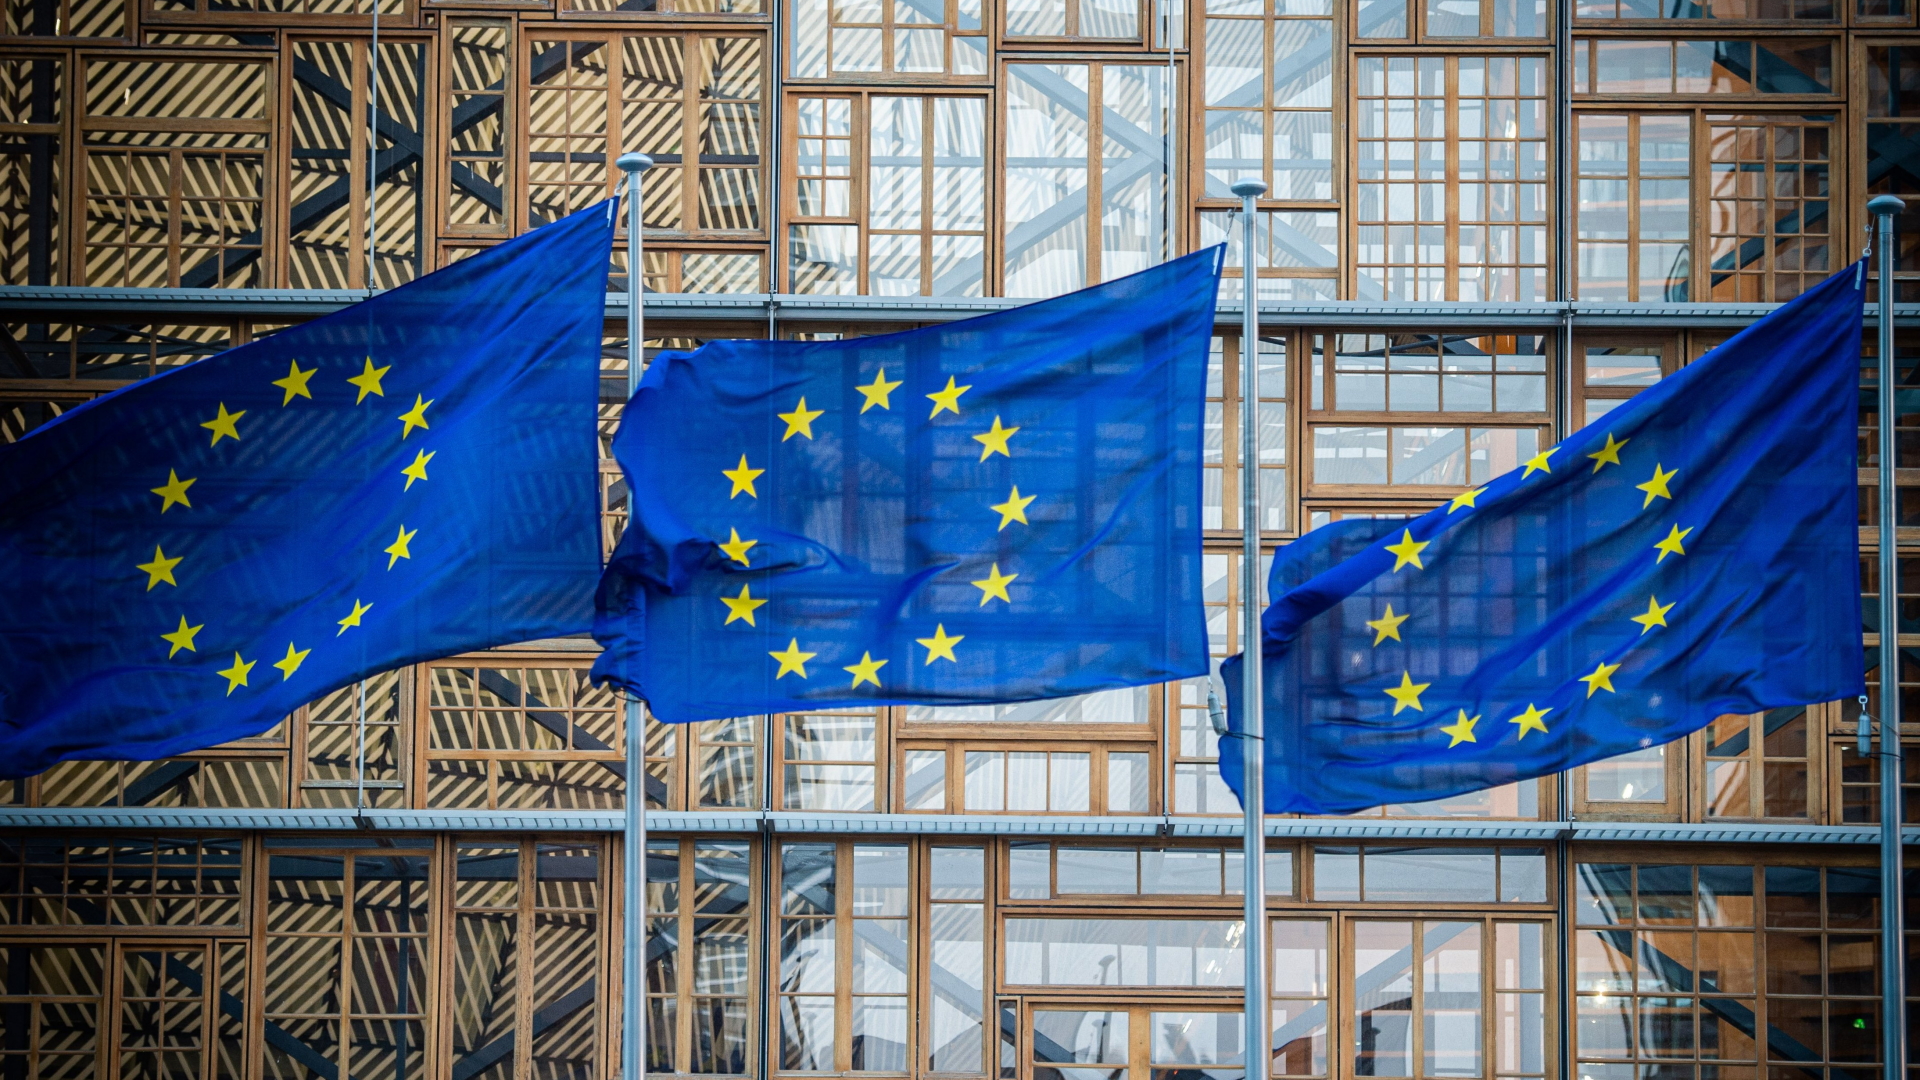 Flaggen der Europäischen Union wehen vor dem Europa-Gebäude in Brüssel. | Bildquelle: dpa